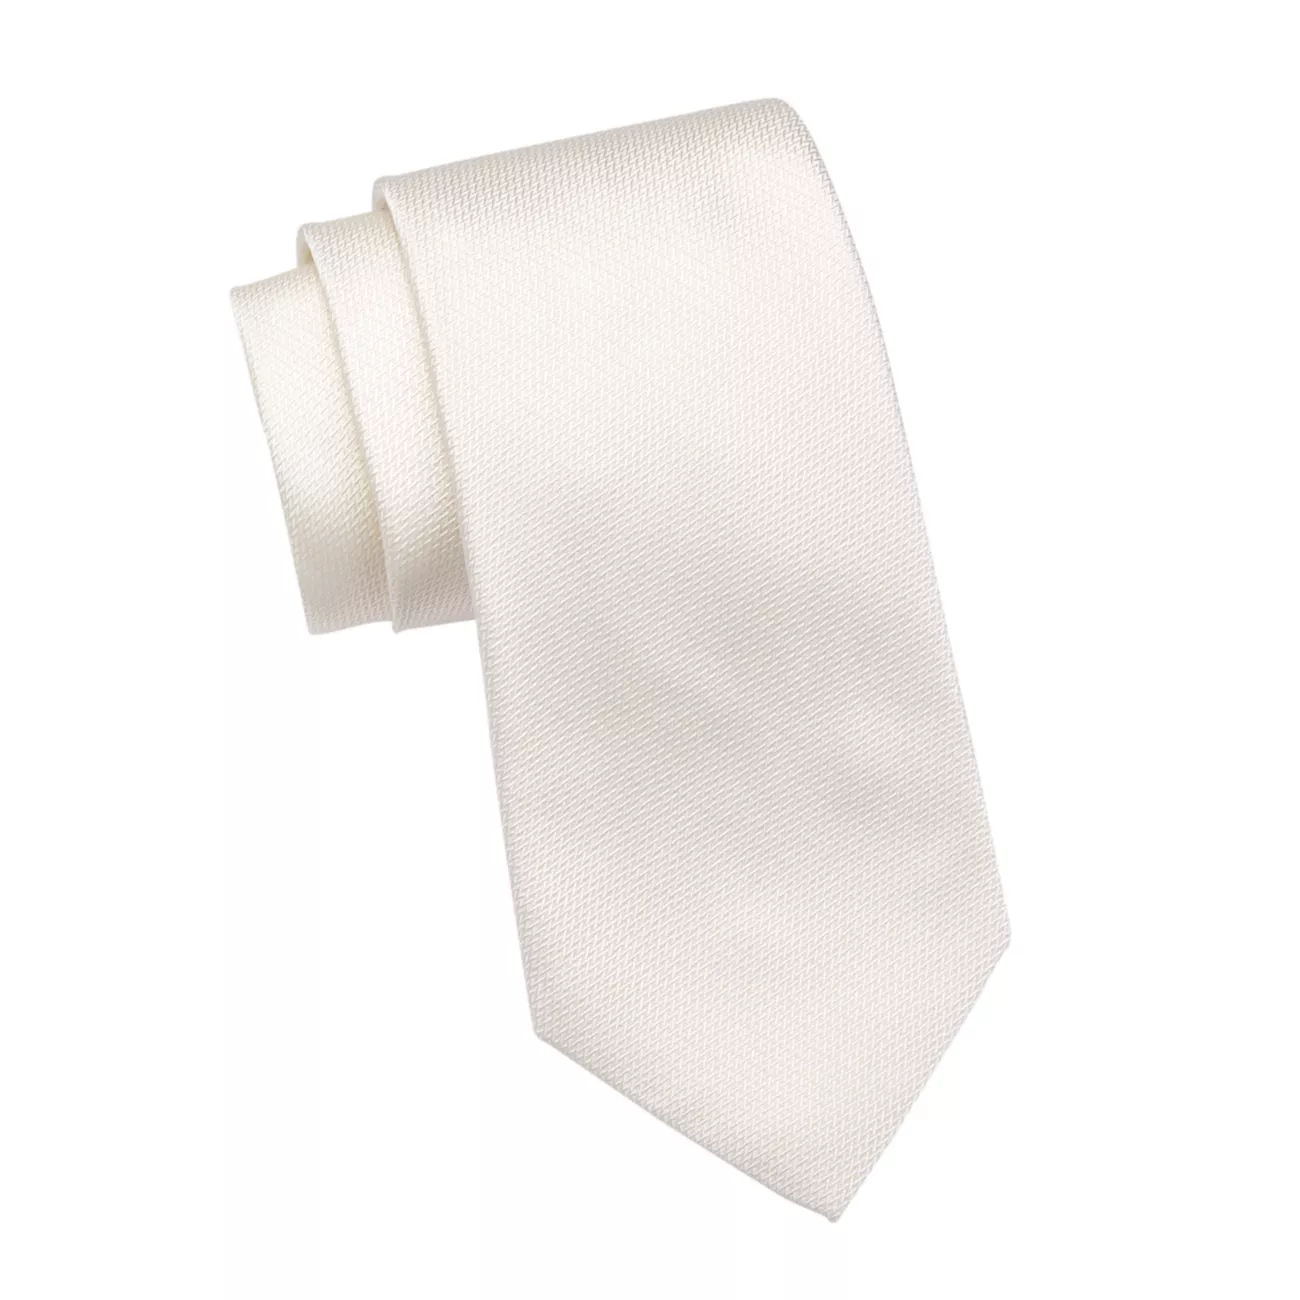 Официальный шелковый галстук ISAIA